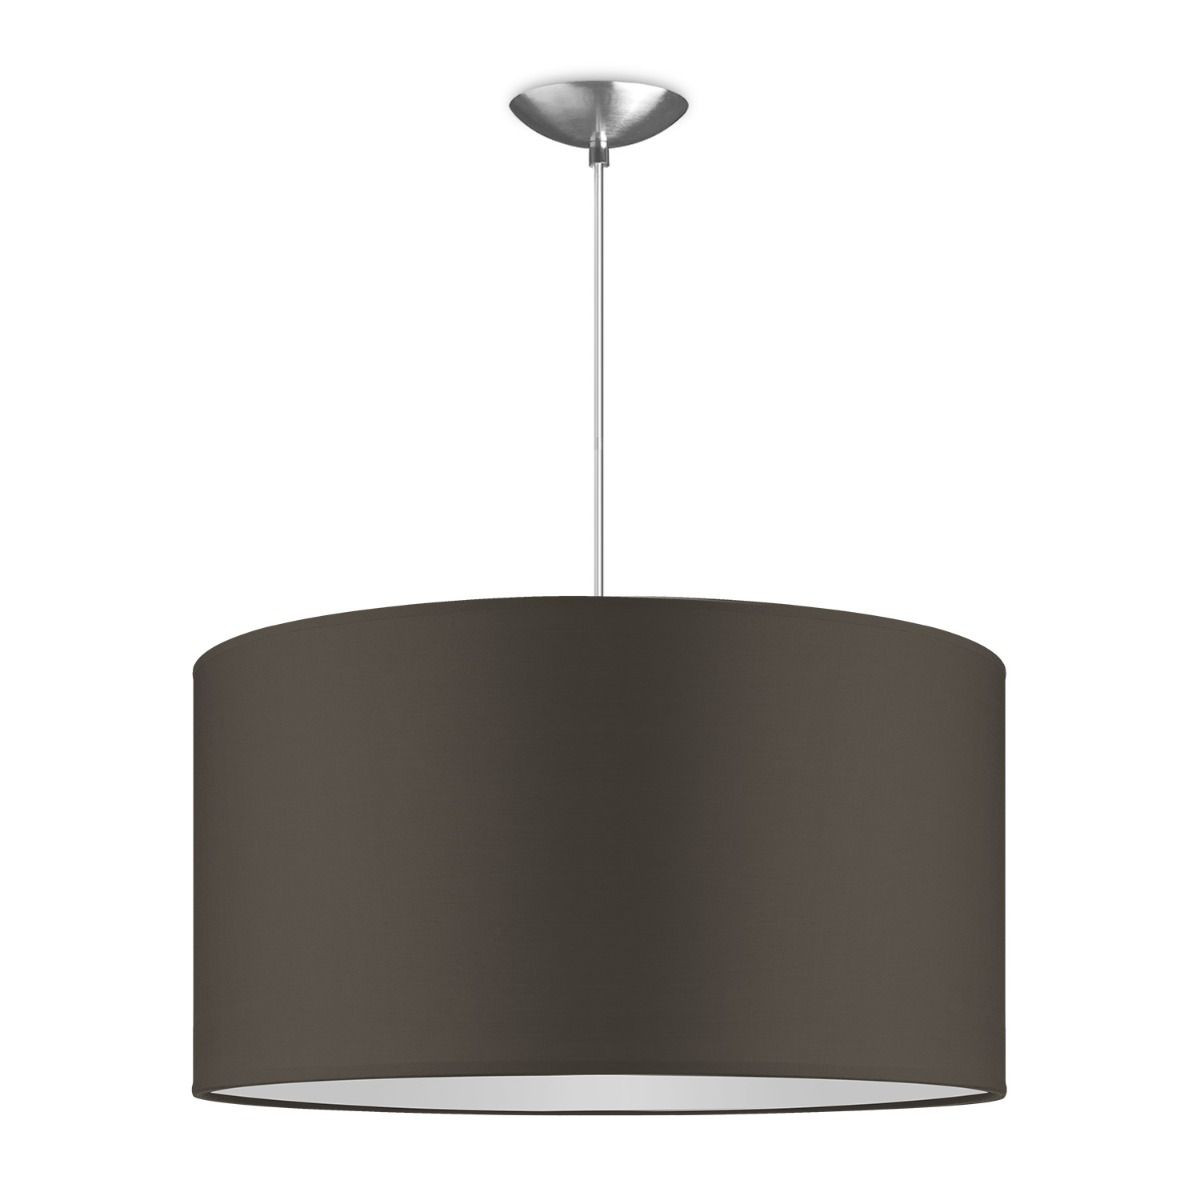 Light depot - hanglamp basic bling Ø 50 cm - taupe - Outlet